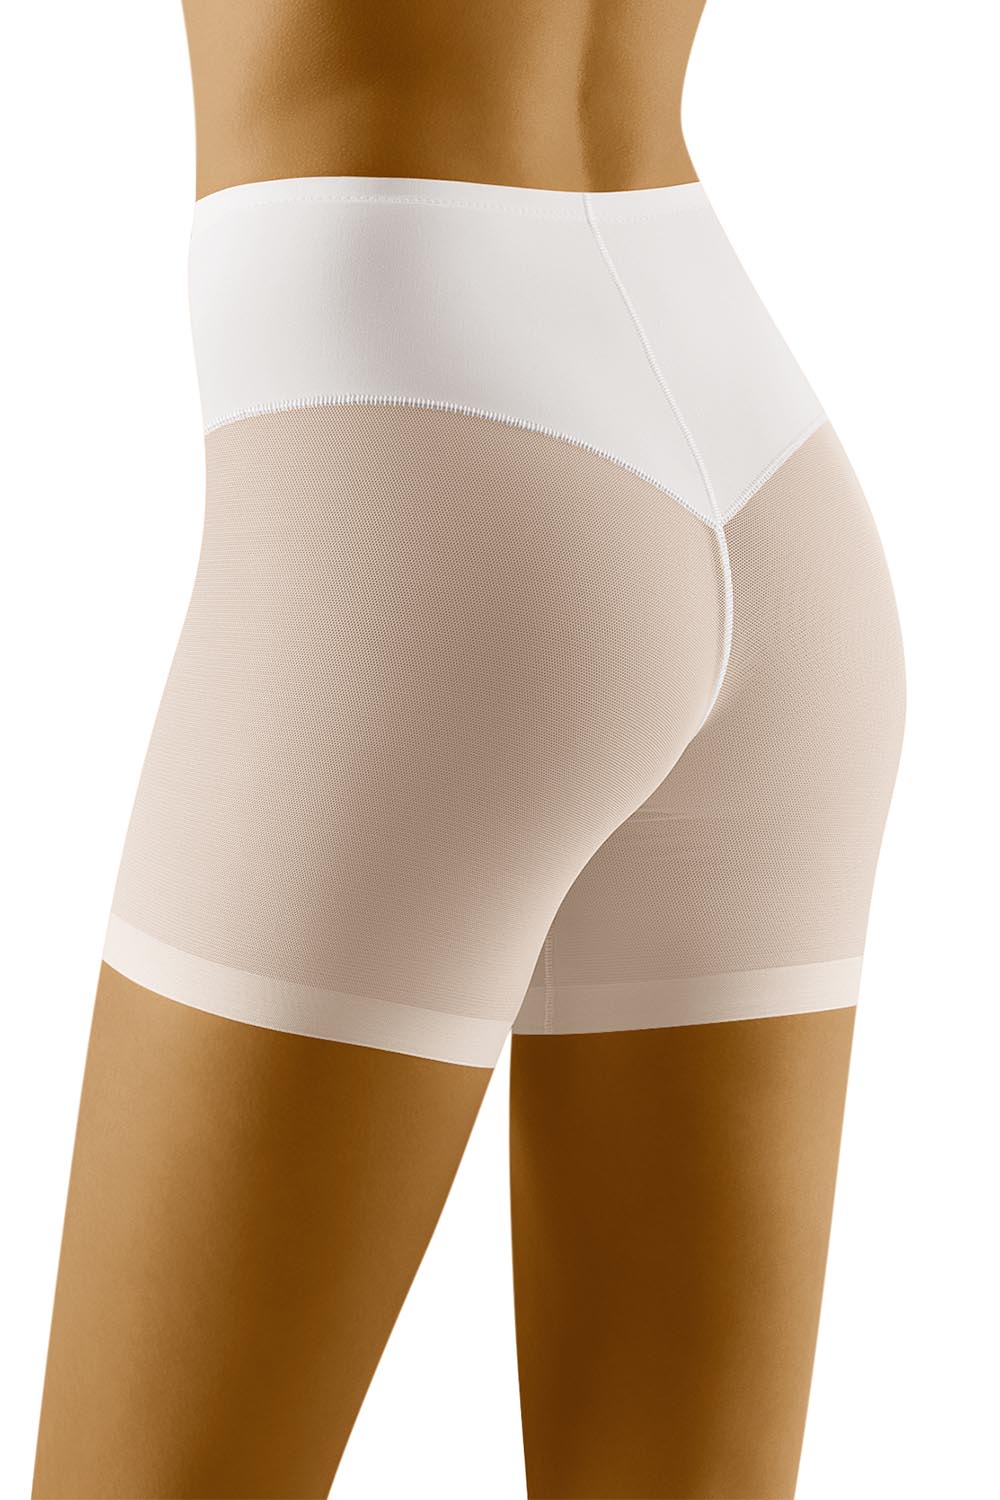 Panties model 123509 Wolbar white Ladies